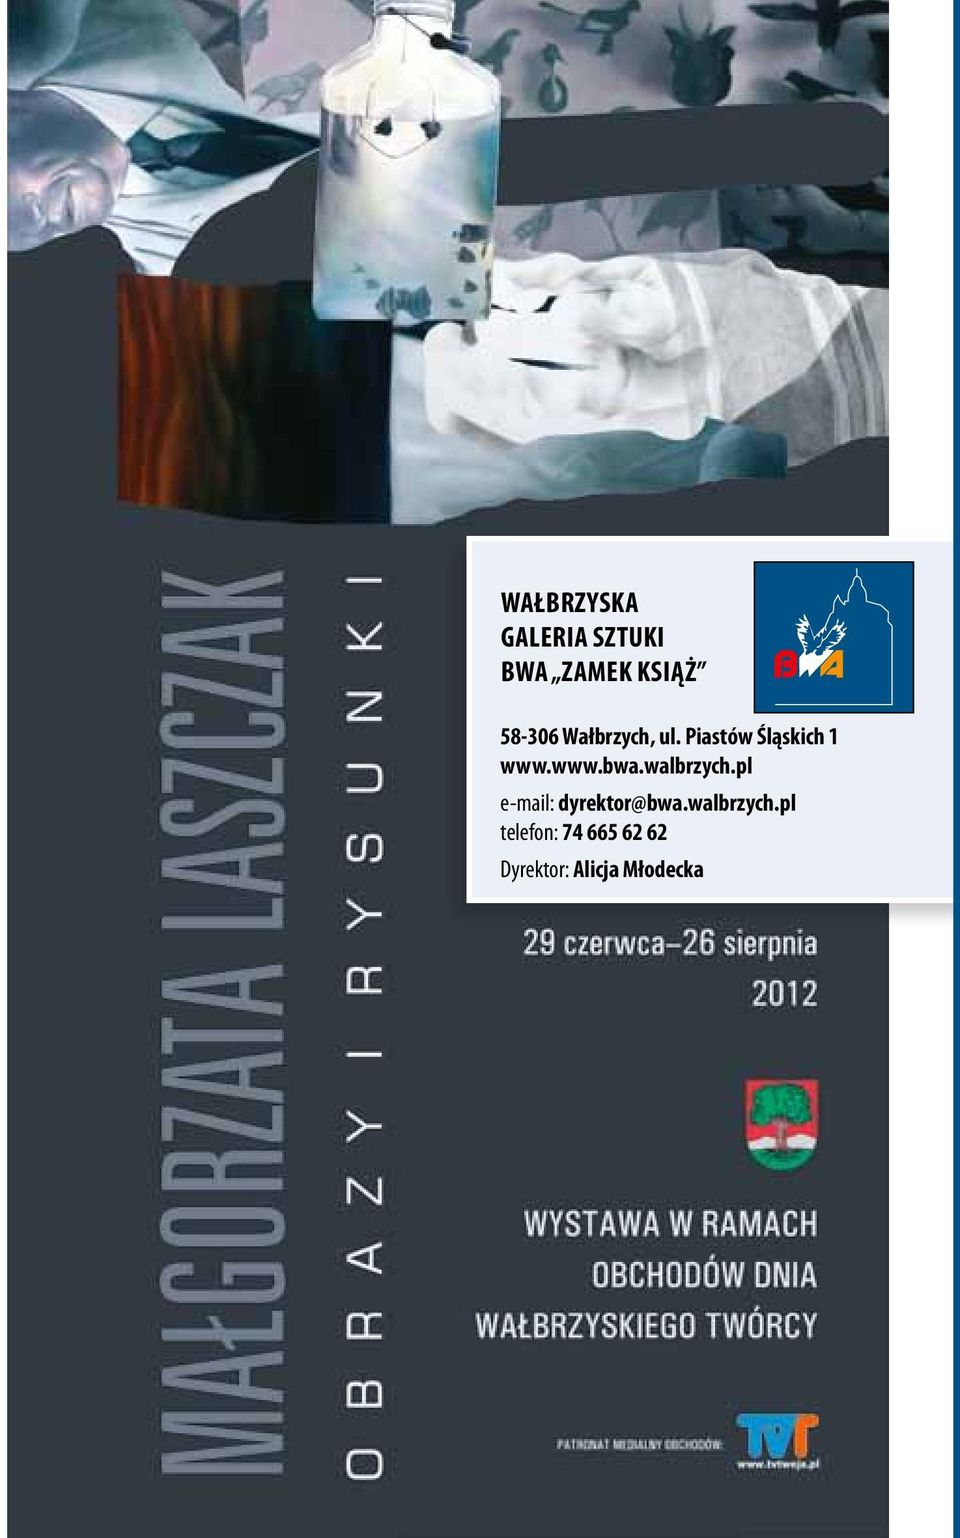 www.bwa.walbrzych.pl e-mail: dyrektor@bwa.